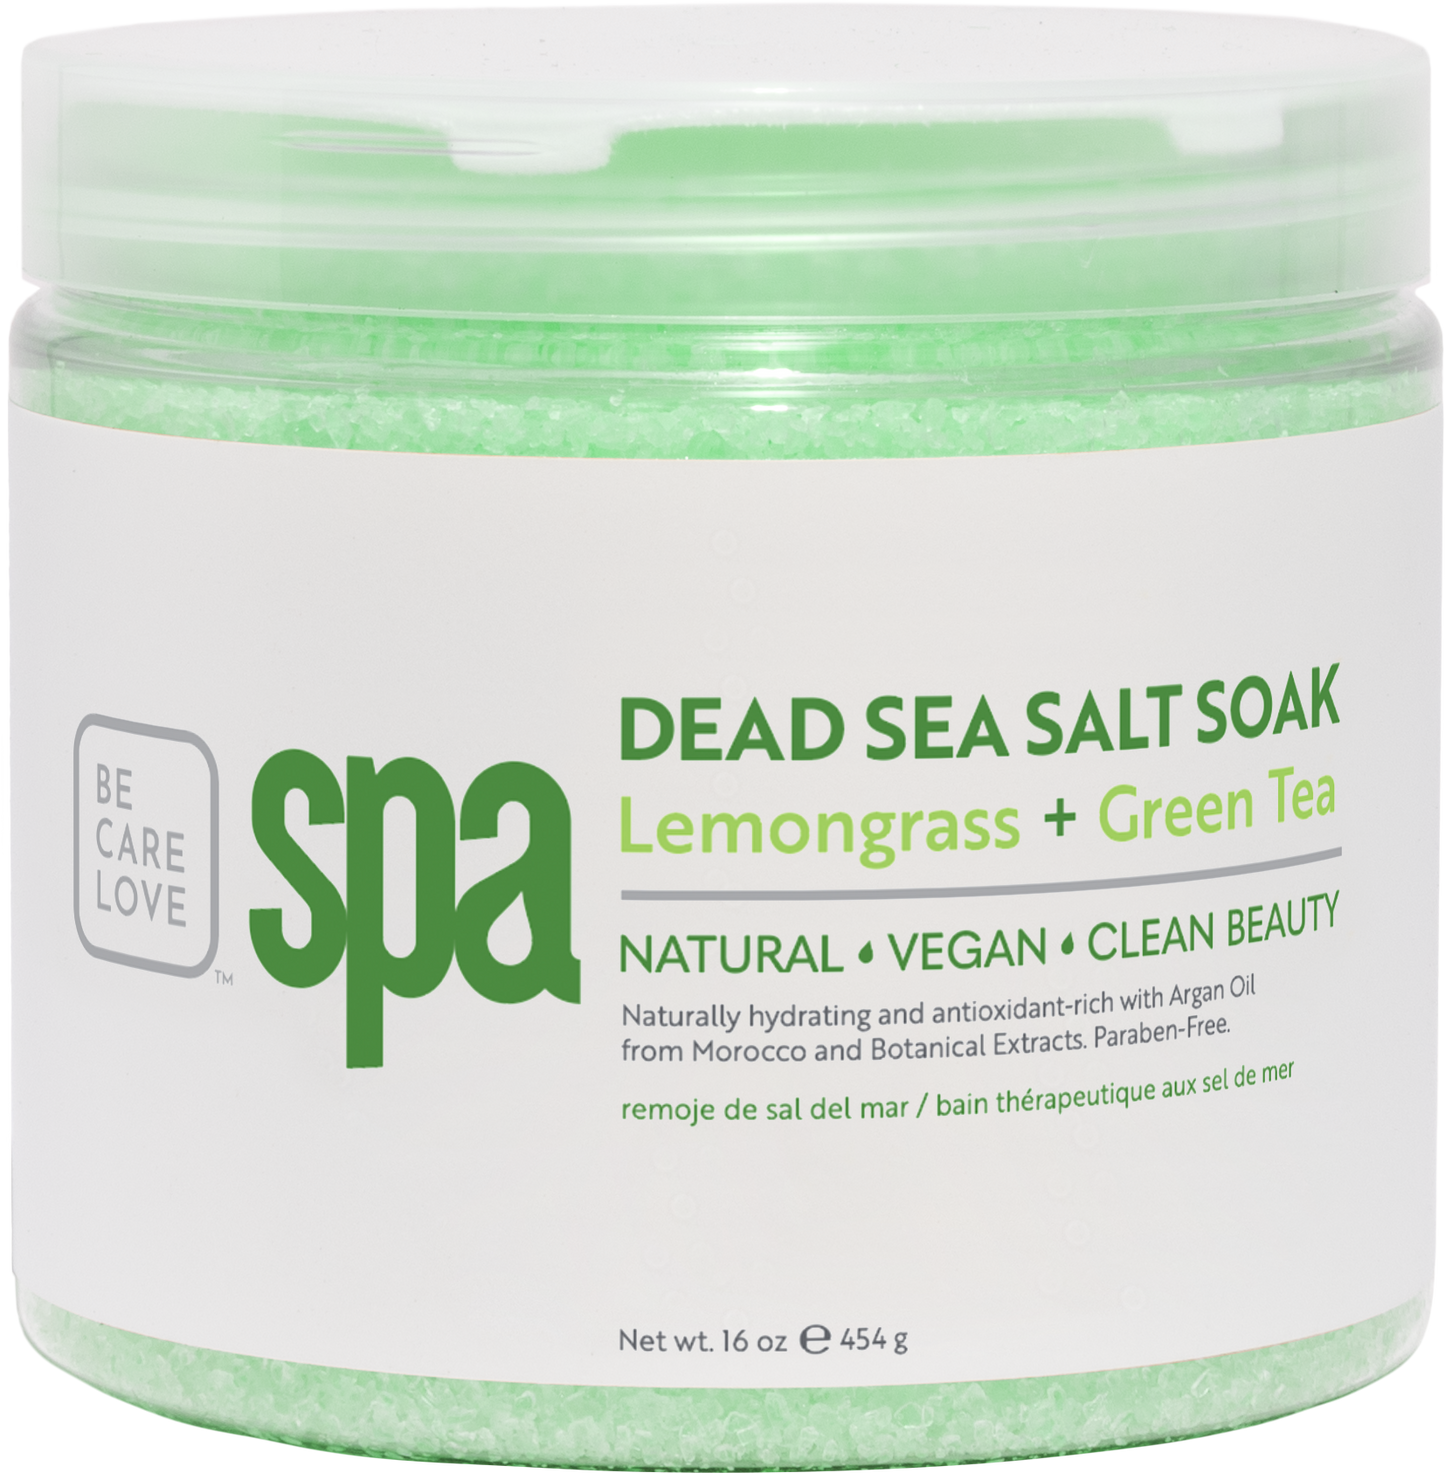 Purifying Lemongrass + Green Tea Dead Sea Salt Soak